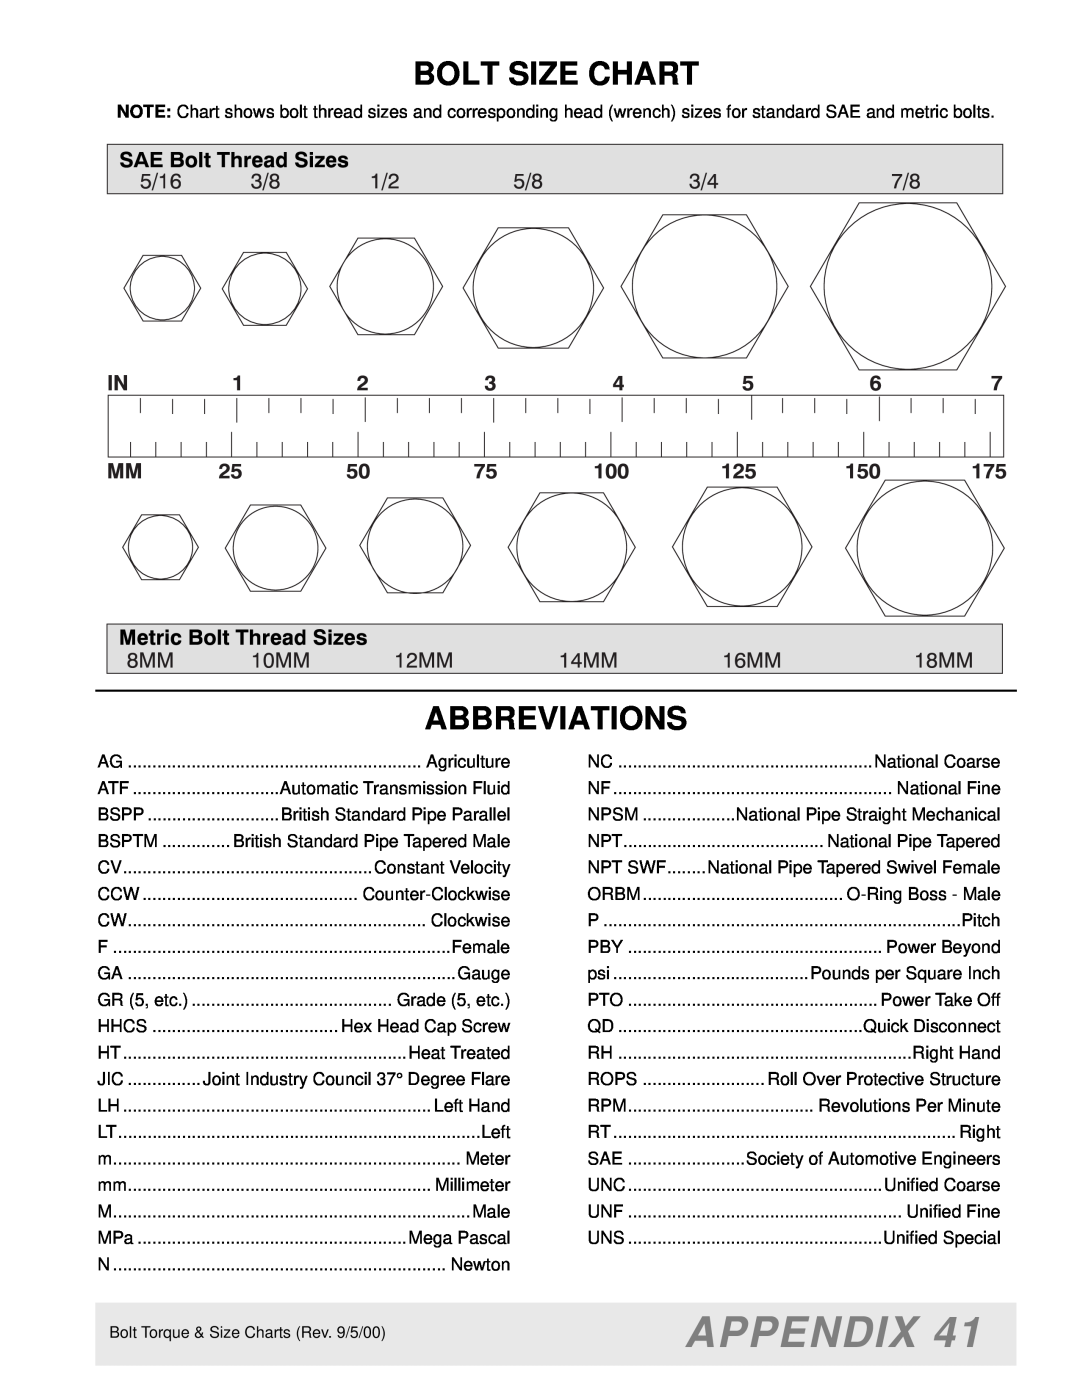 Woods Equipment M8200 manual Appendix, Bolt Size Chart, Abbreviations 